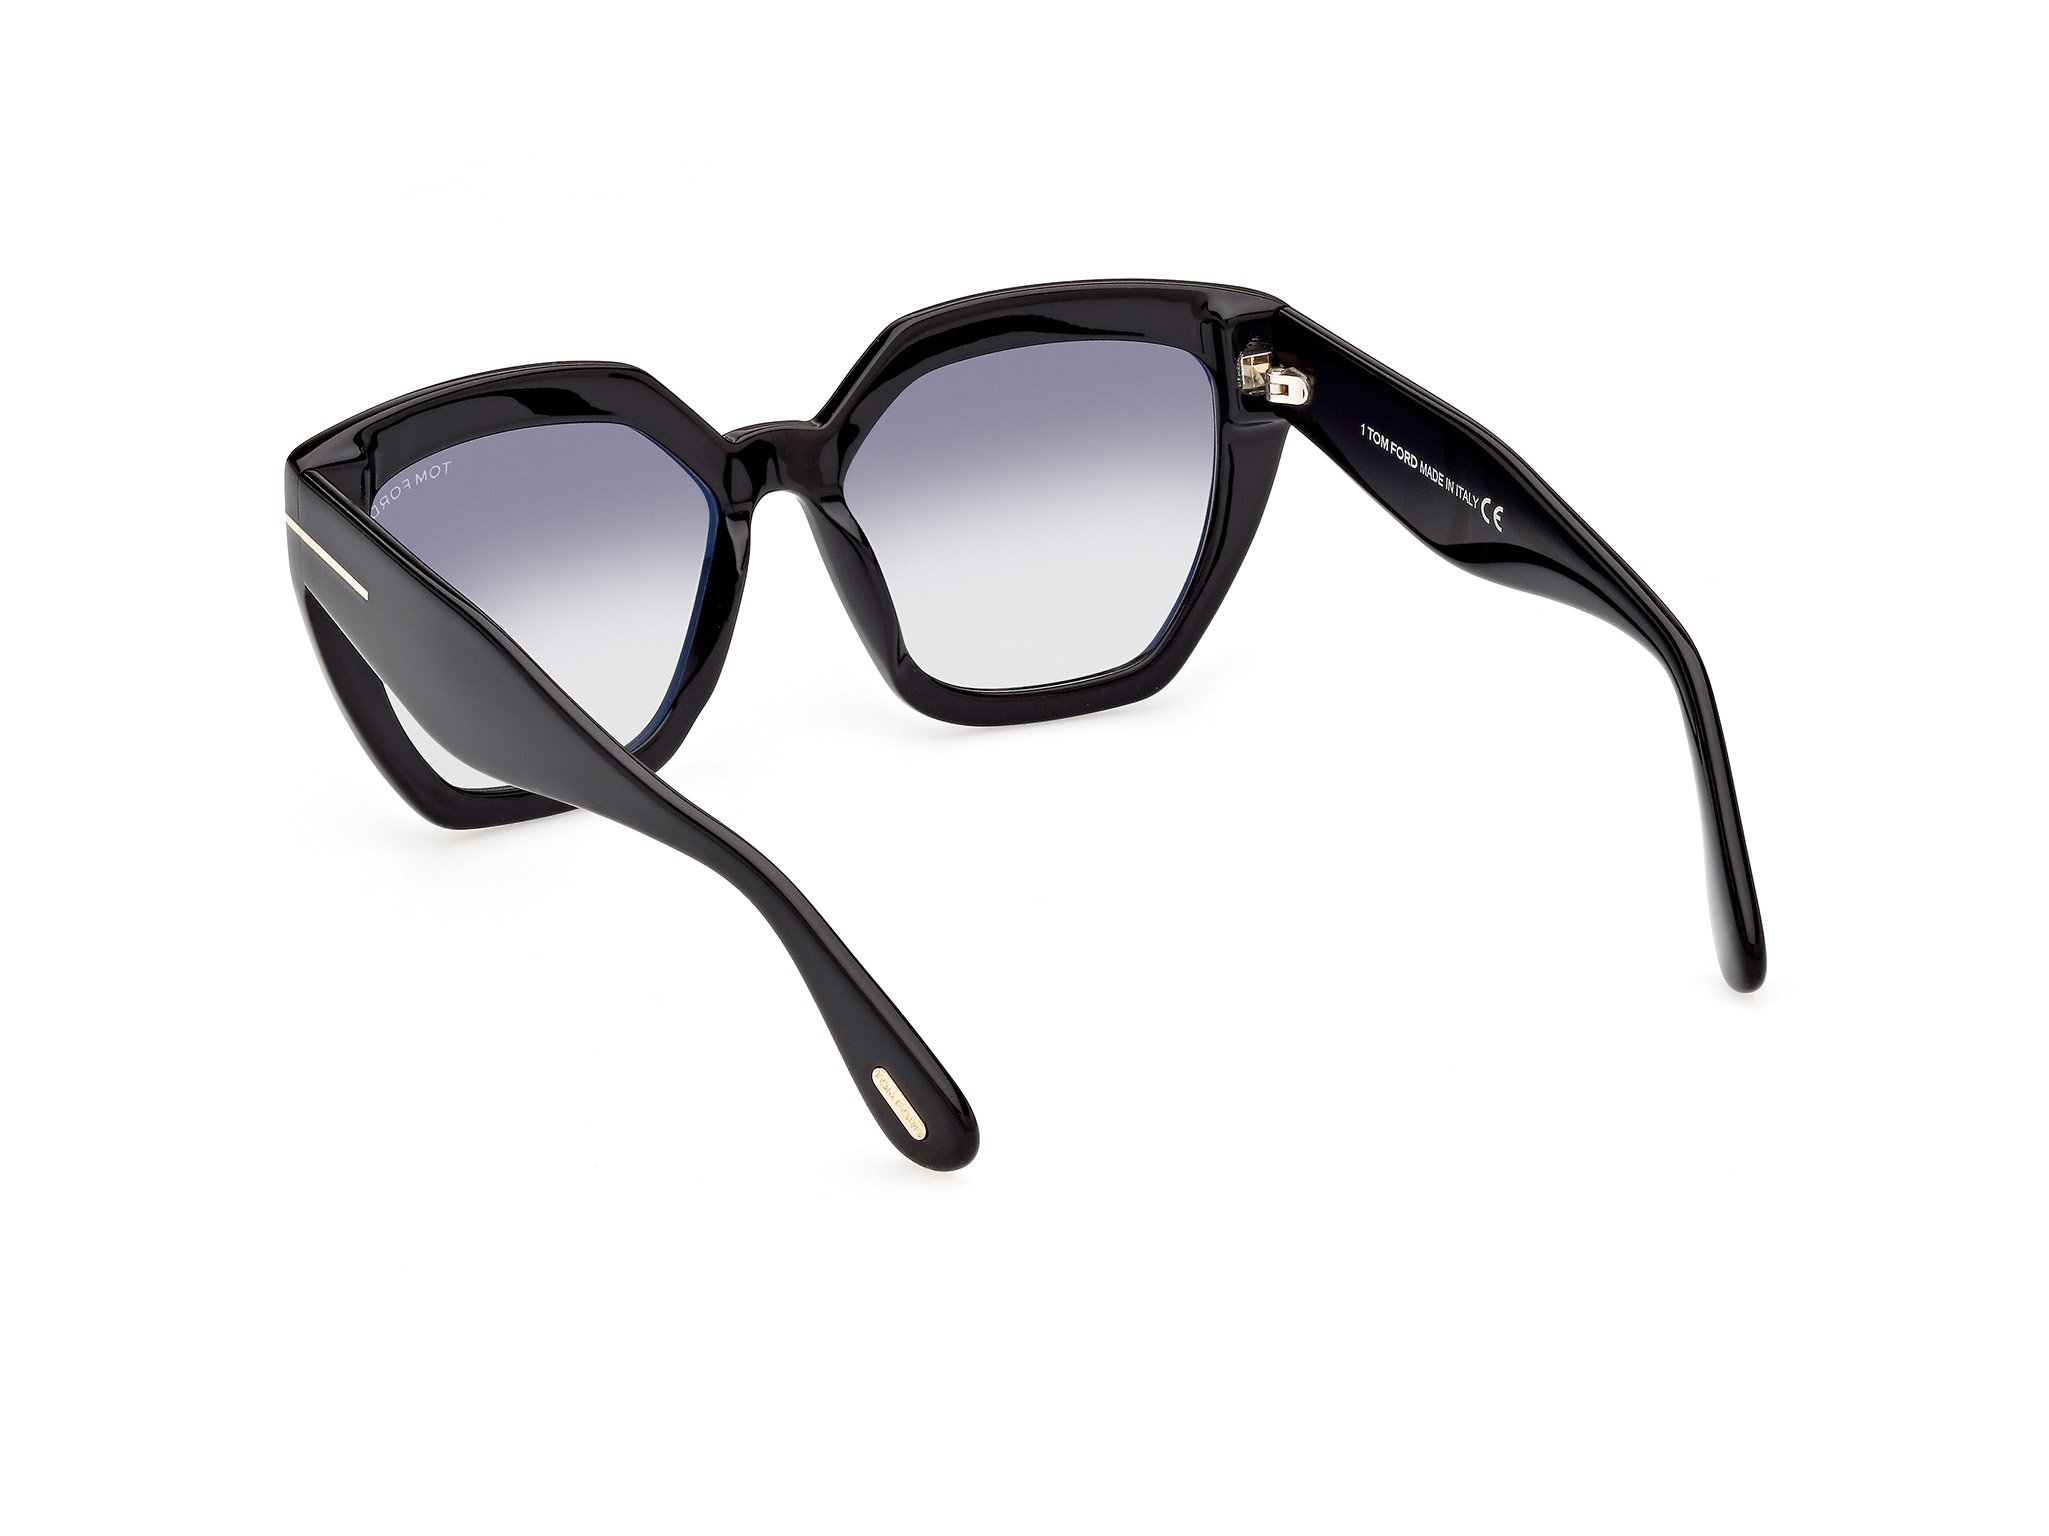 Das Bild zeigt die Sonnenbrille FT0989 01B von der Marke Tom Ford in schwarz..